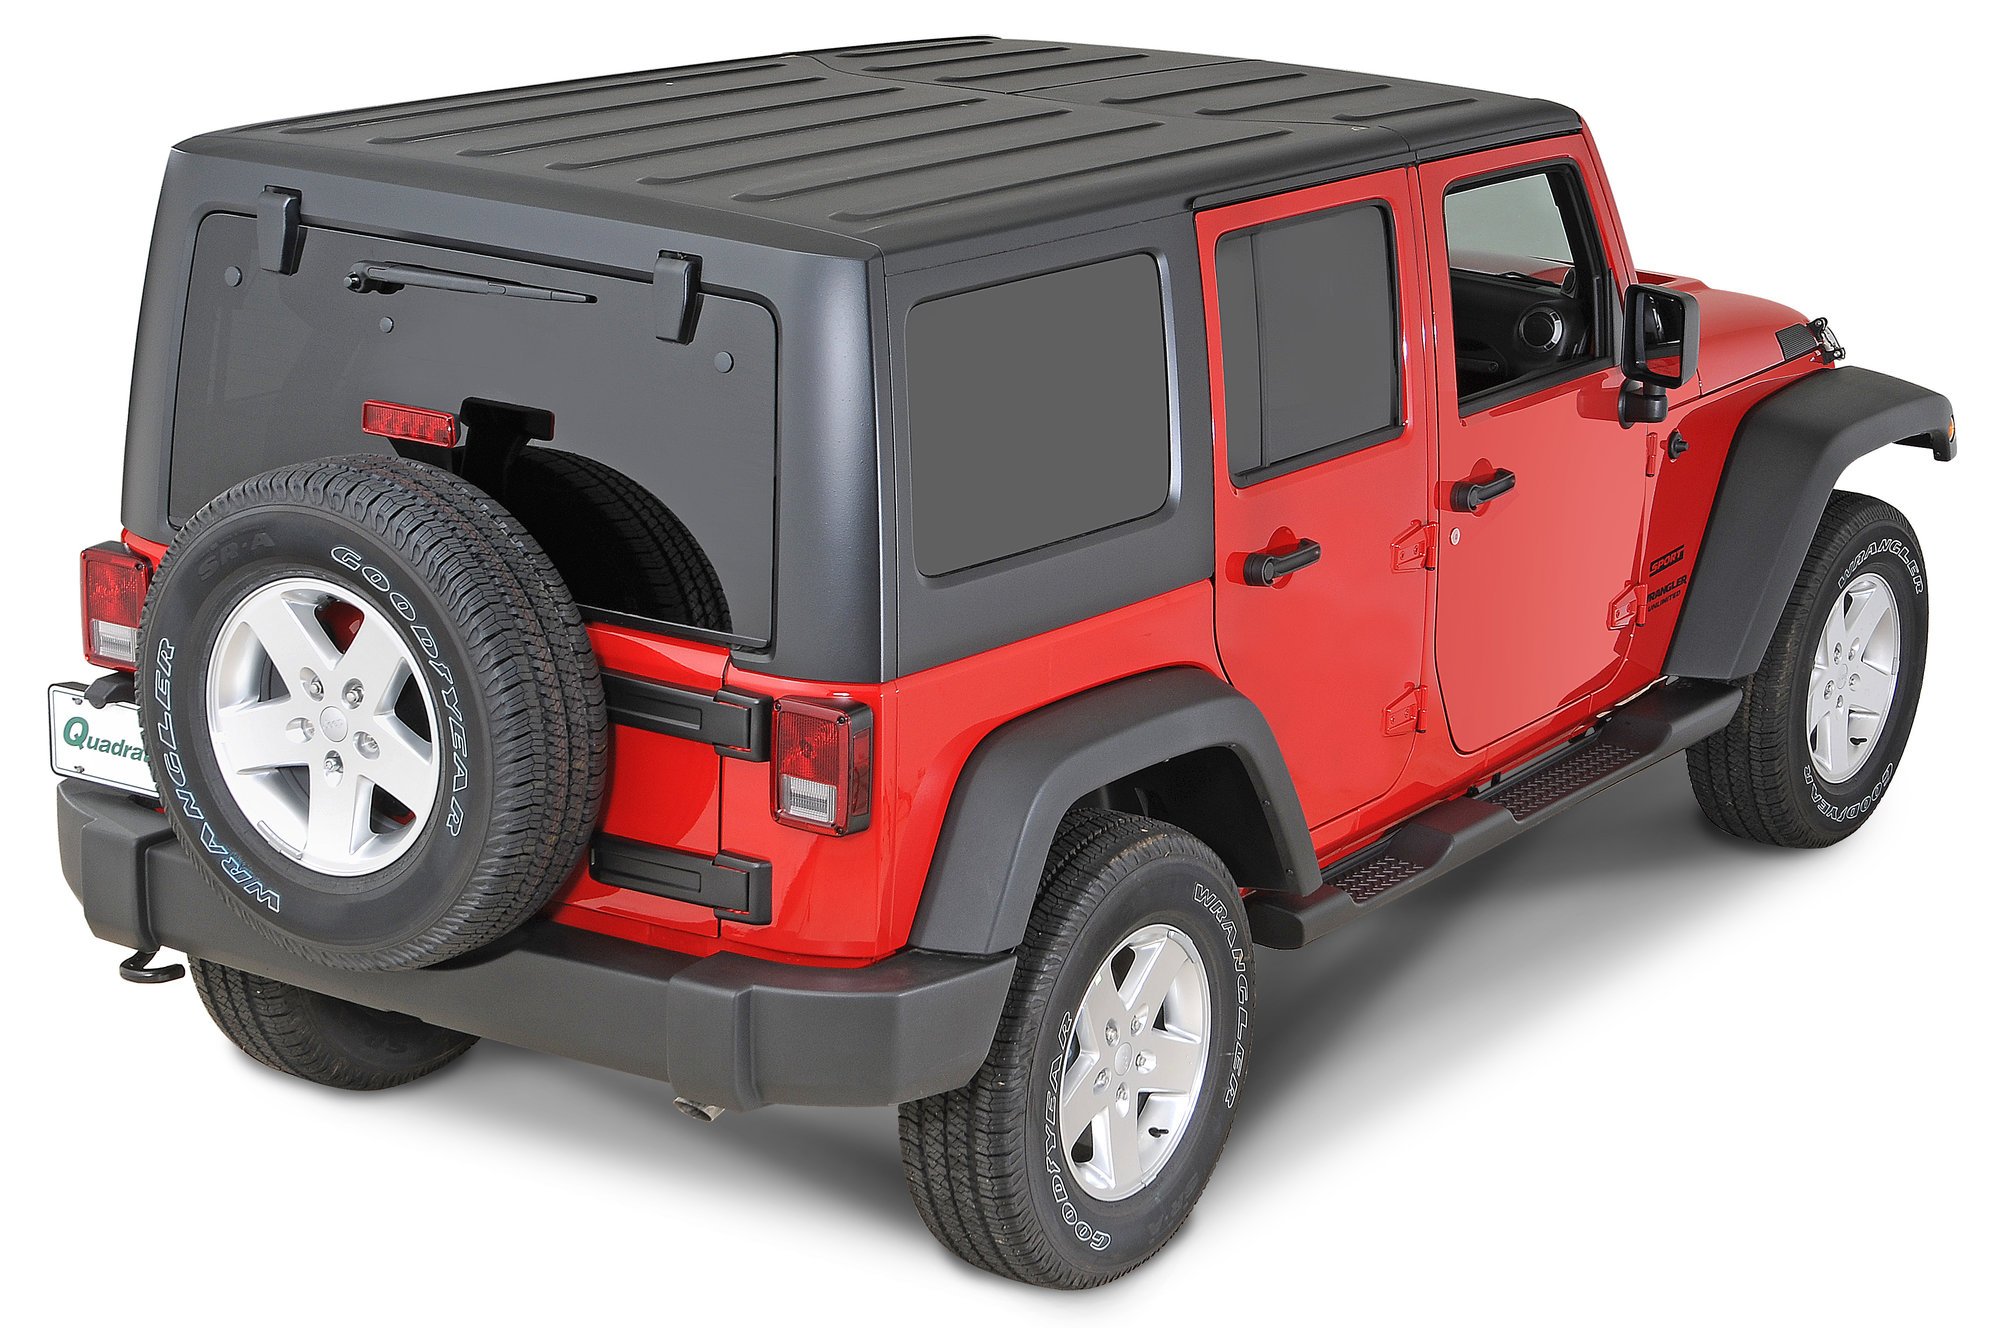 Arriba 79+ imagen 3 piece hardtop for jeep wrangler unlimited